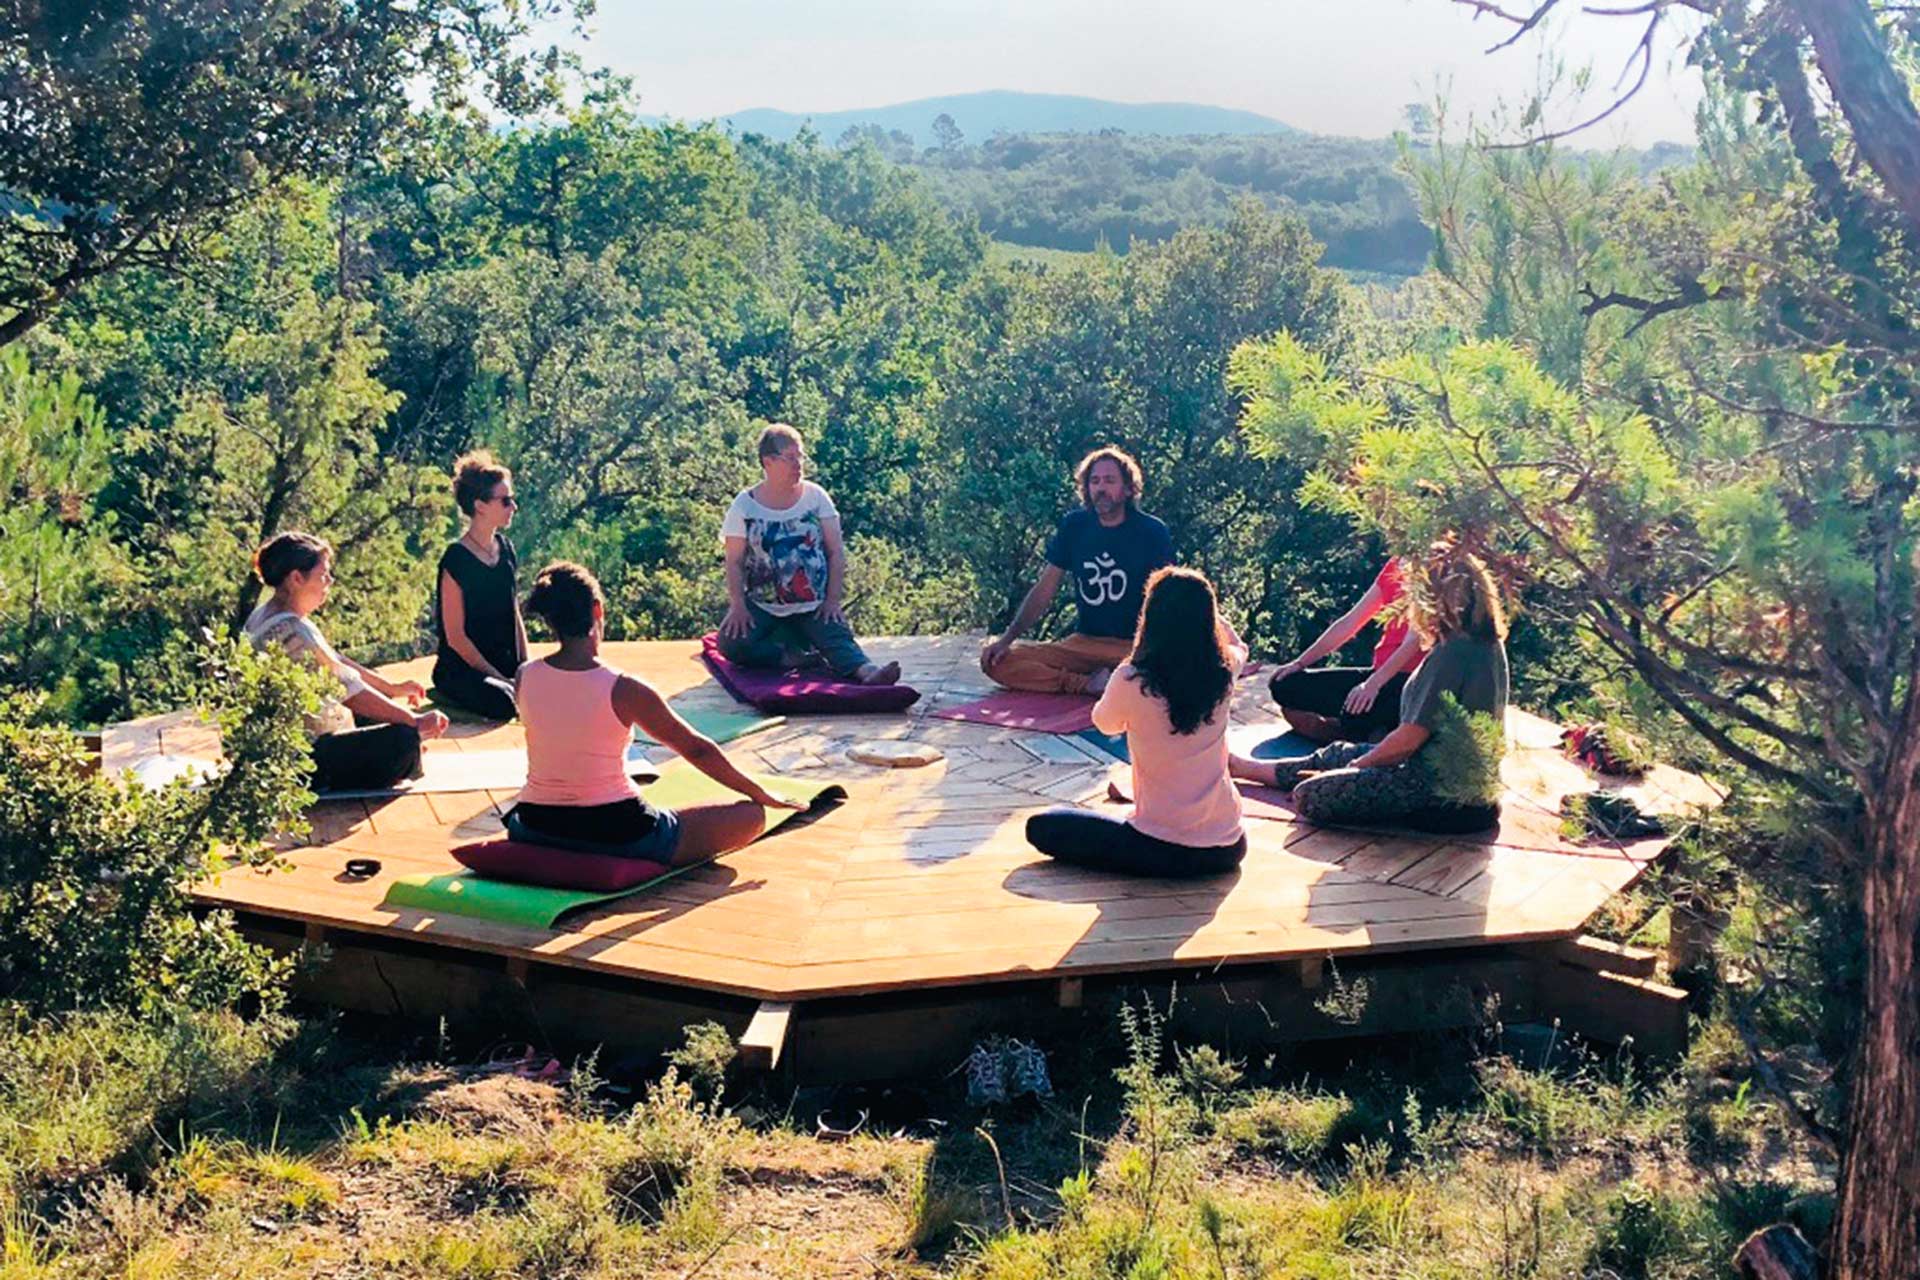 Le Domaine des Sens, où Yannick Parat crée le festival Yoga du Sud, est un havre de paix planté de chênes et de cades, propice aux activités de bien-être.